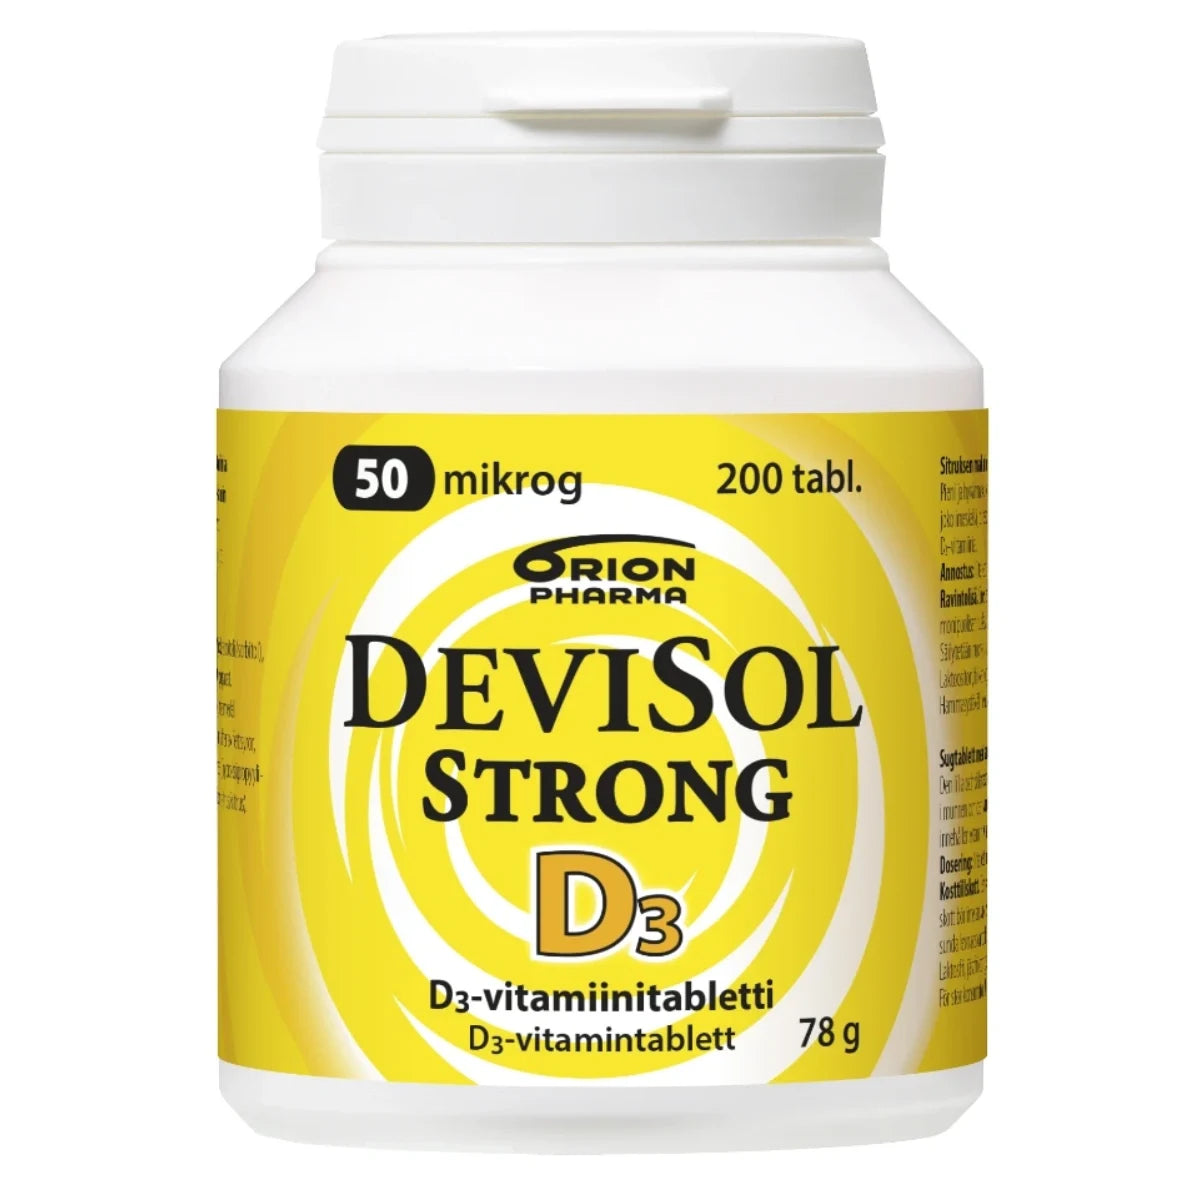 DEVISOL Strong 50 mikrog imeskelytabletti 200 kpl hyvänmakuinen pieni D3-vitamiinivalmiste